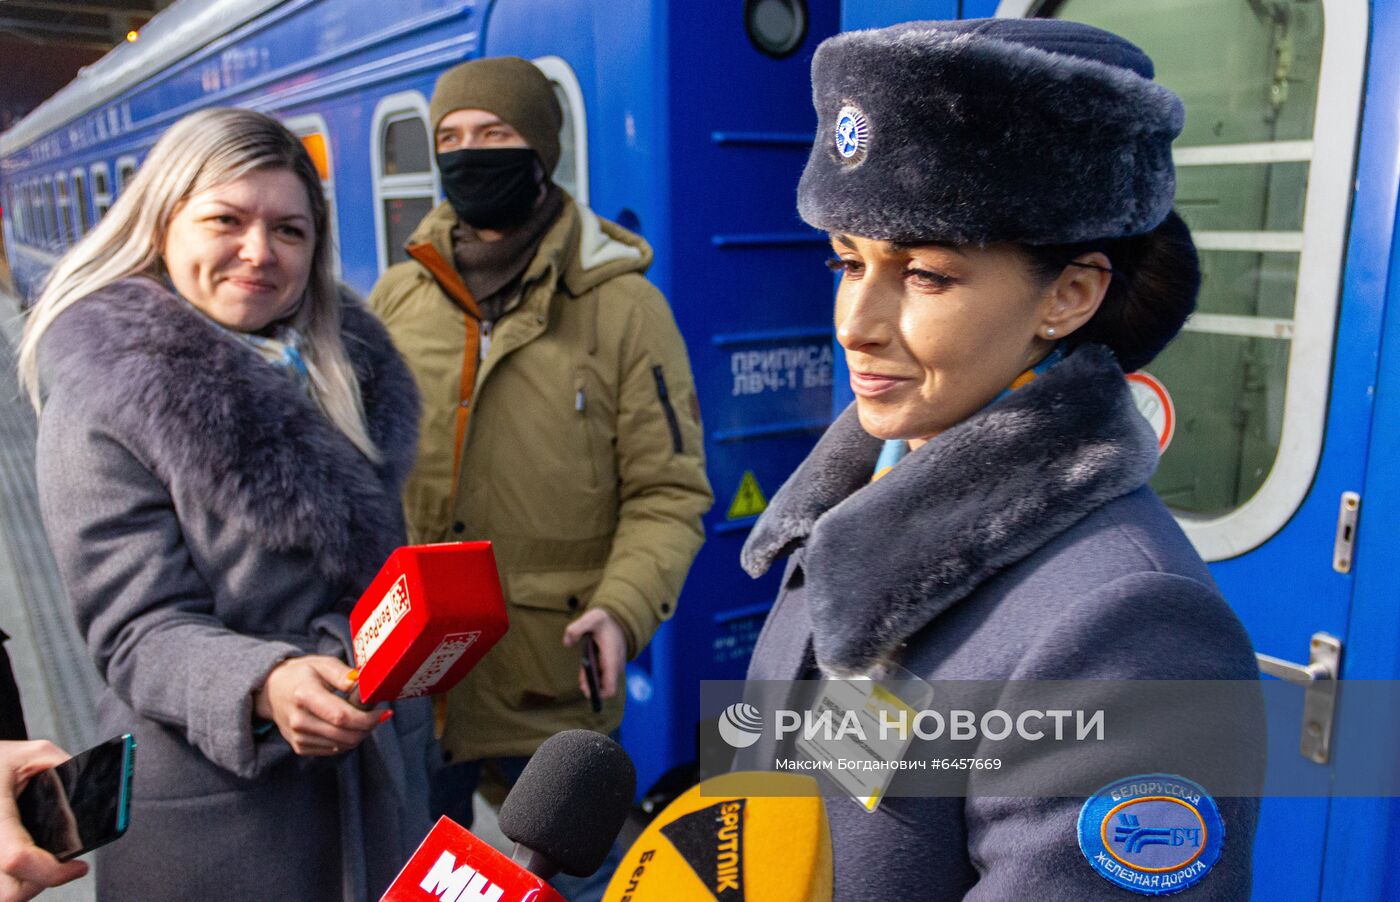 Россия возобновила железнодорожное сообщение с Белоруссией